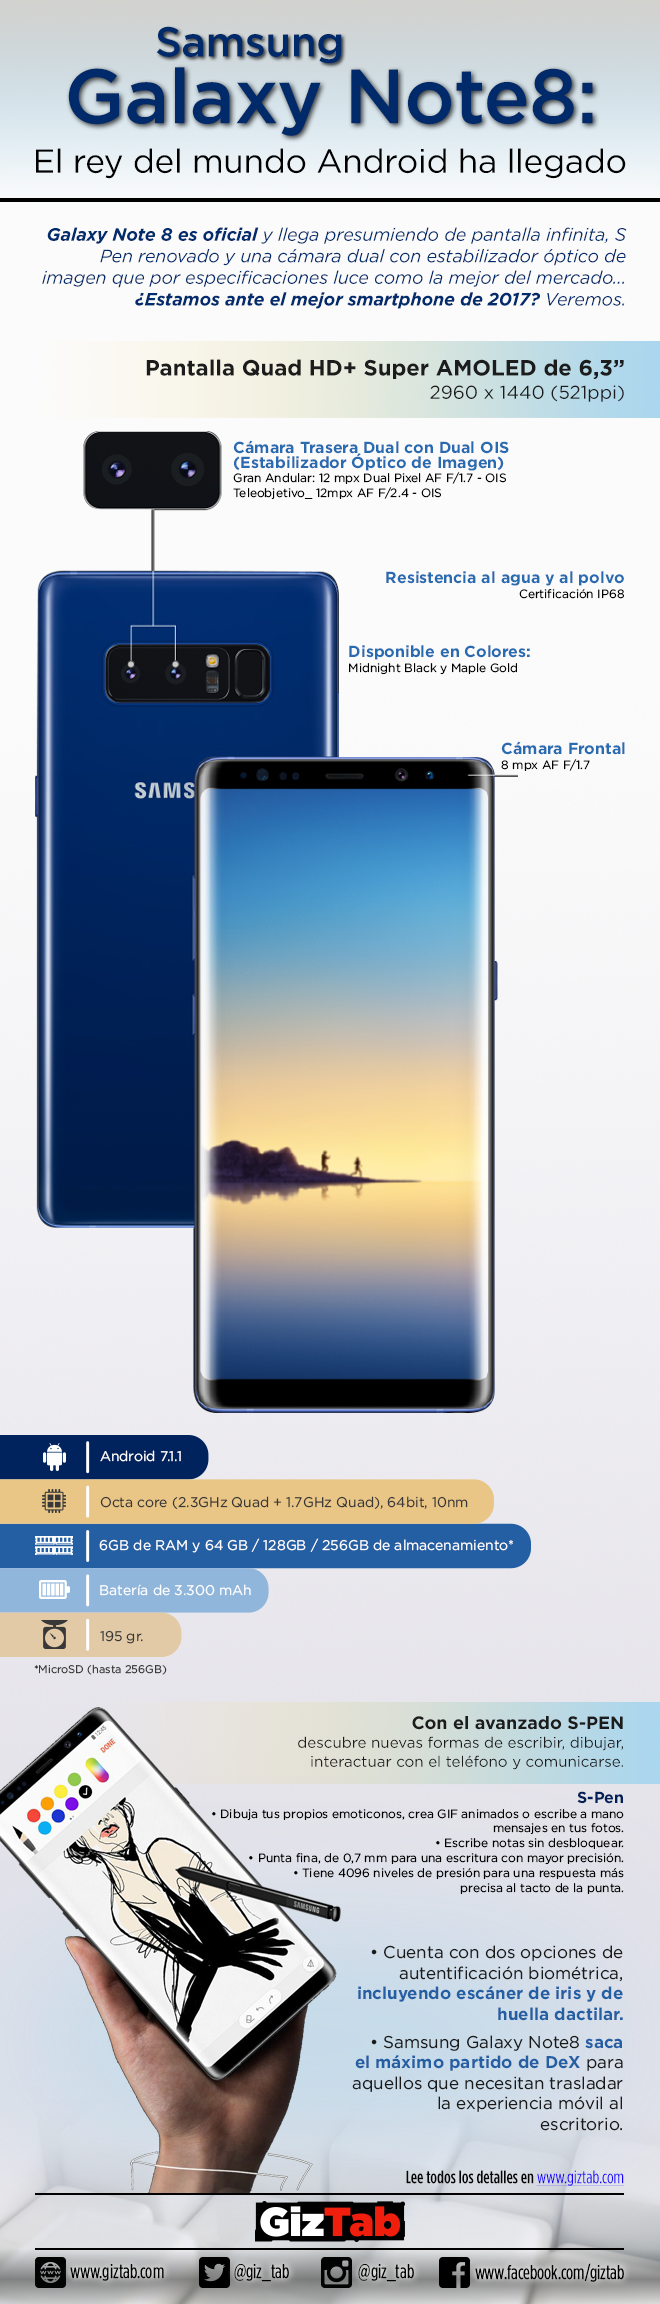 Samsung Galaxy Note 8, resumen de características